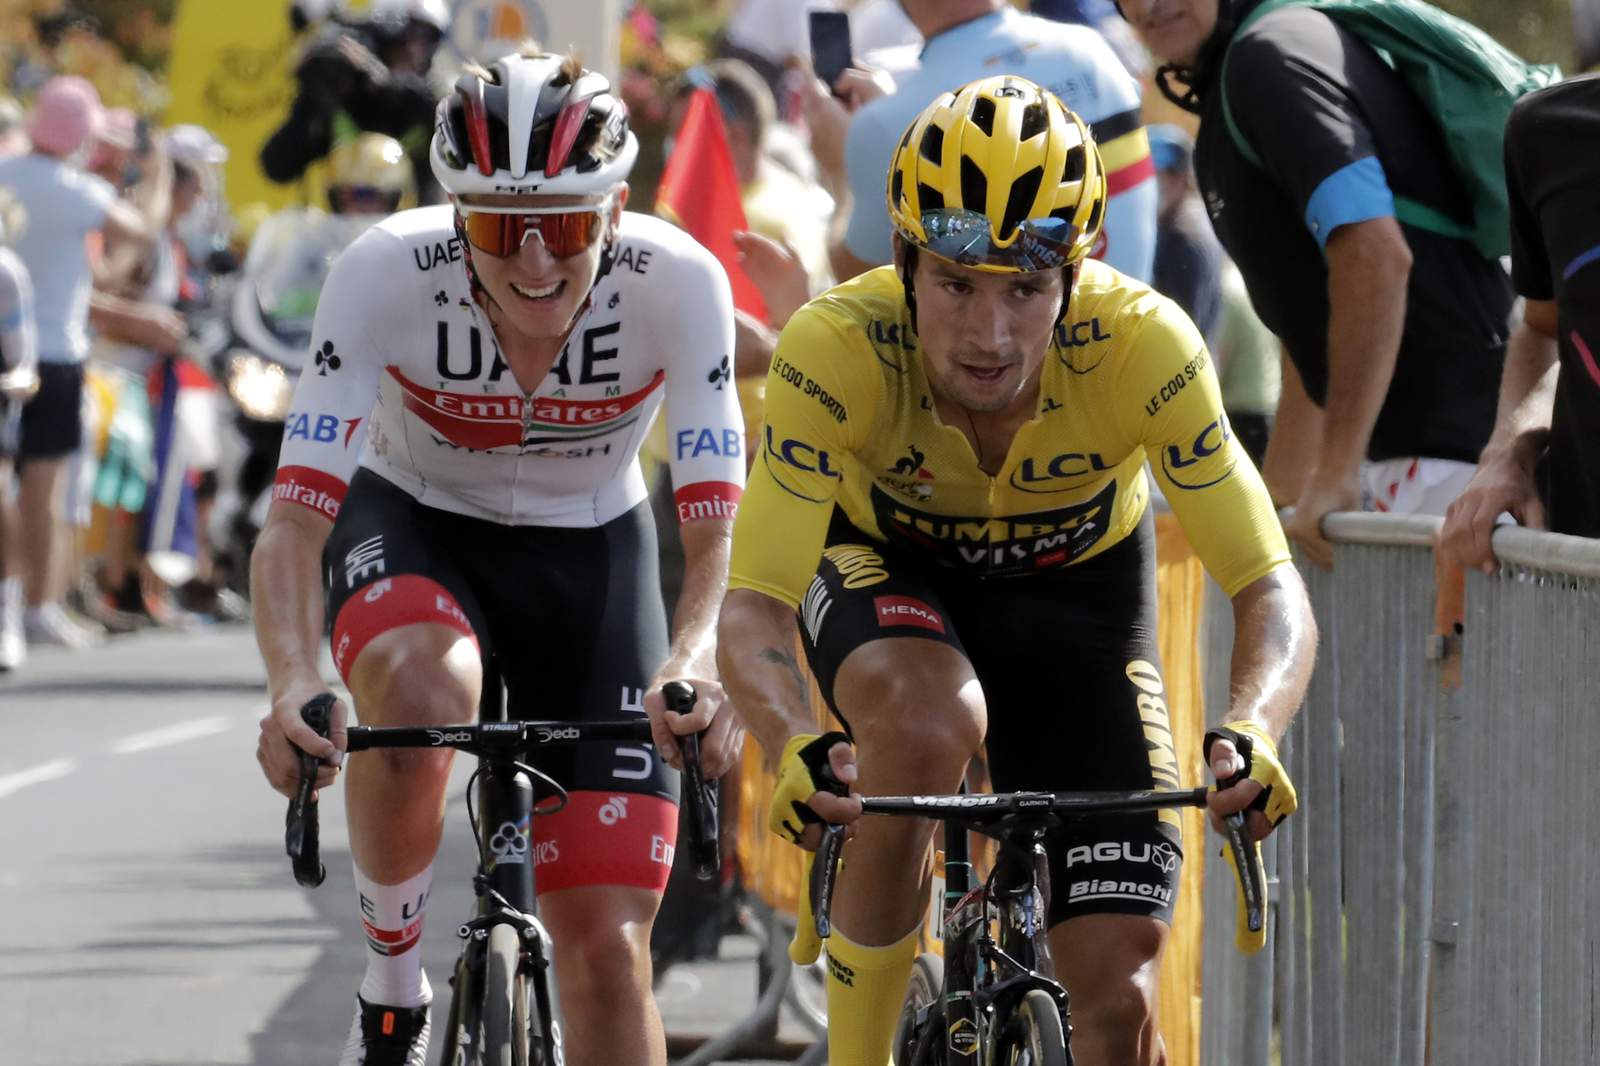 Martinez wins Tour de France Stage 13